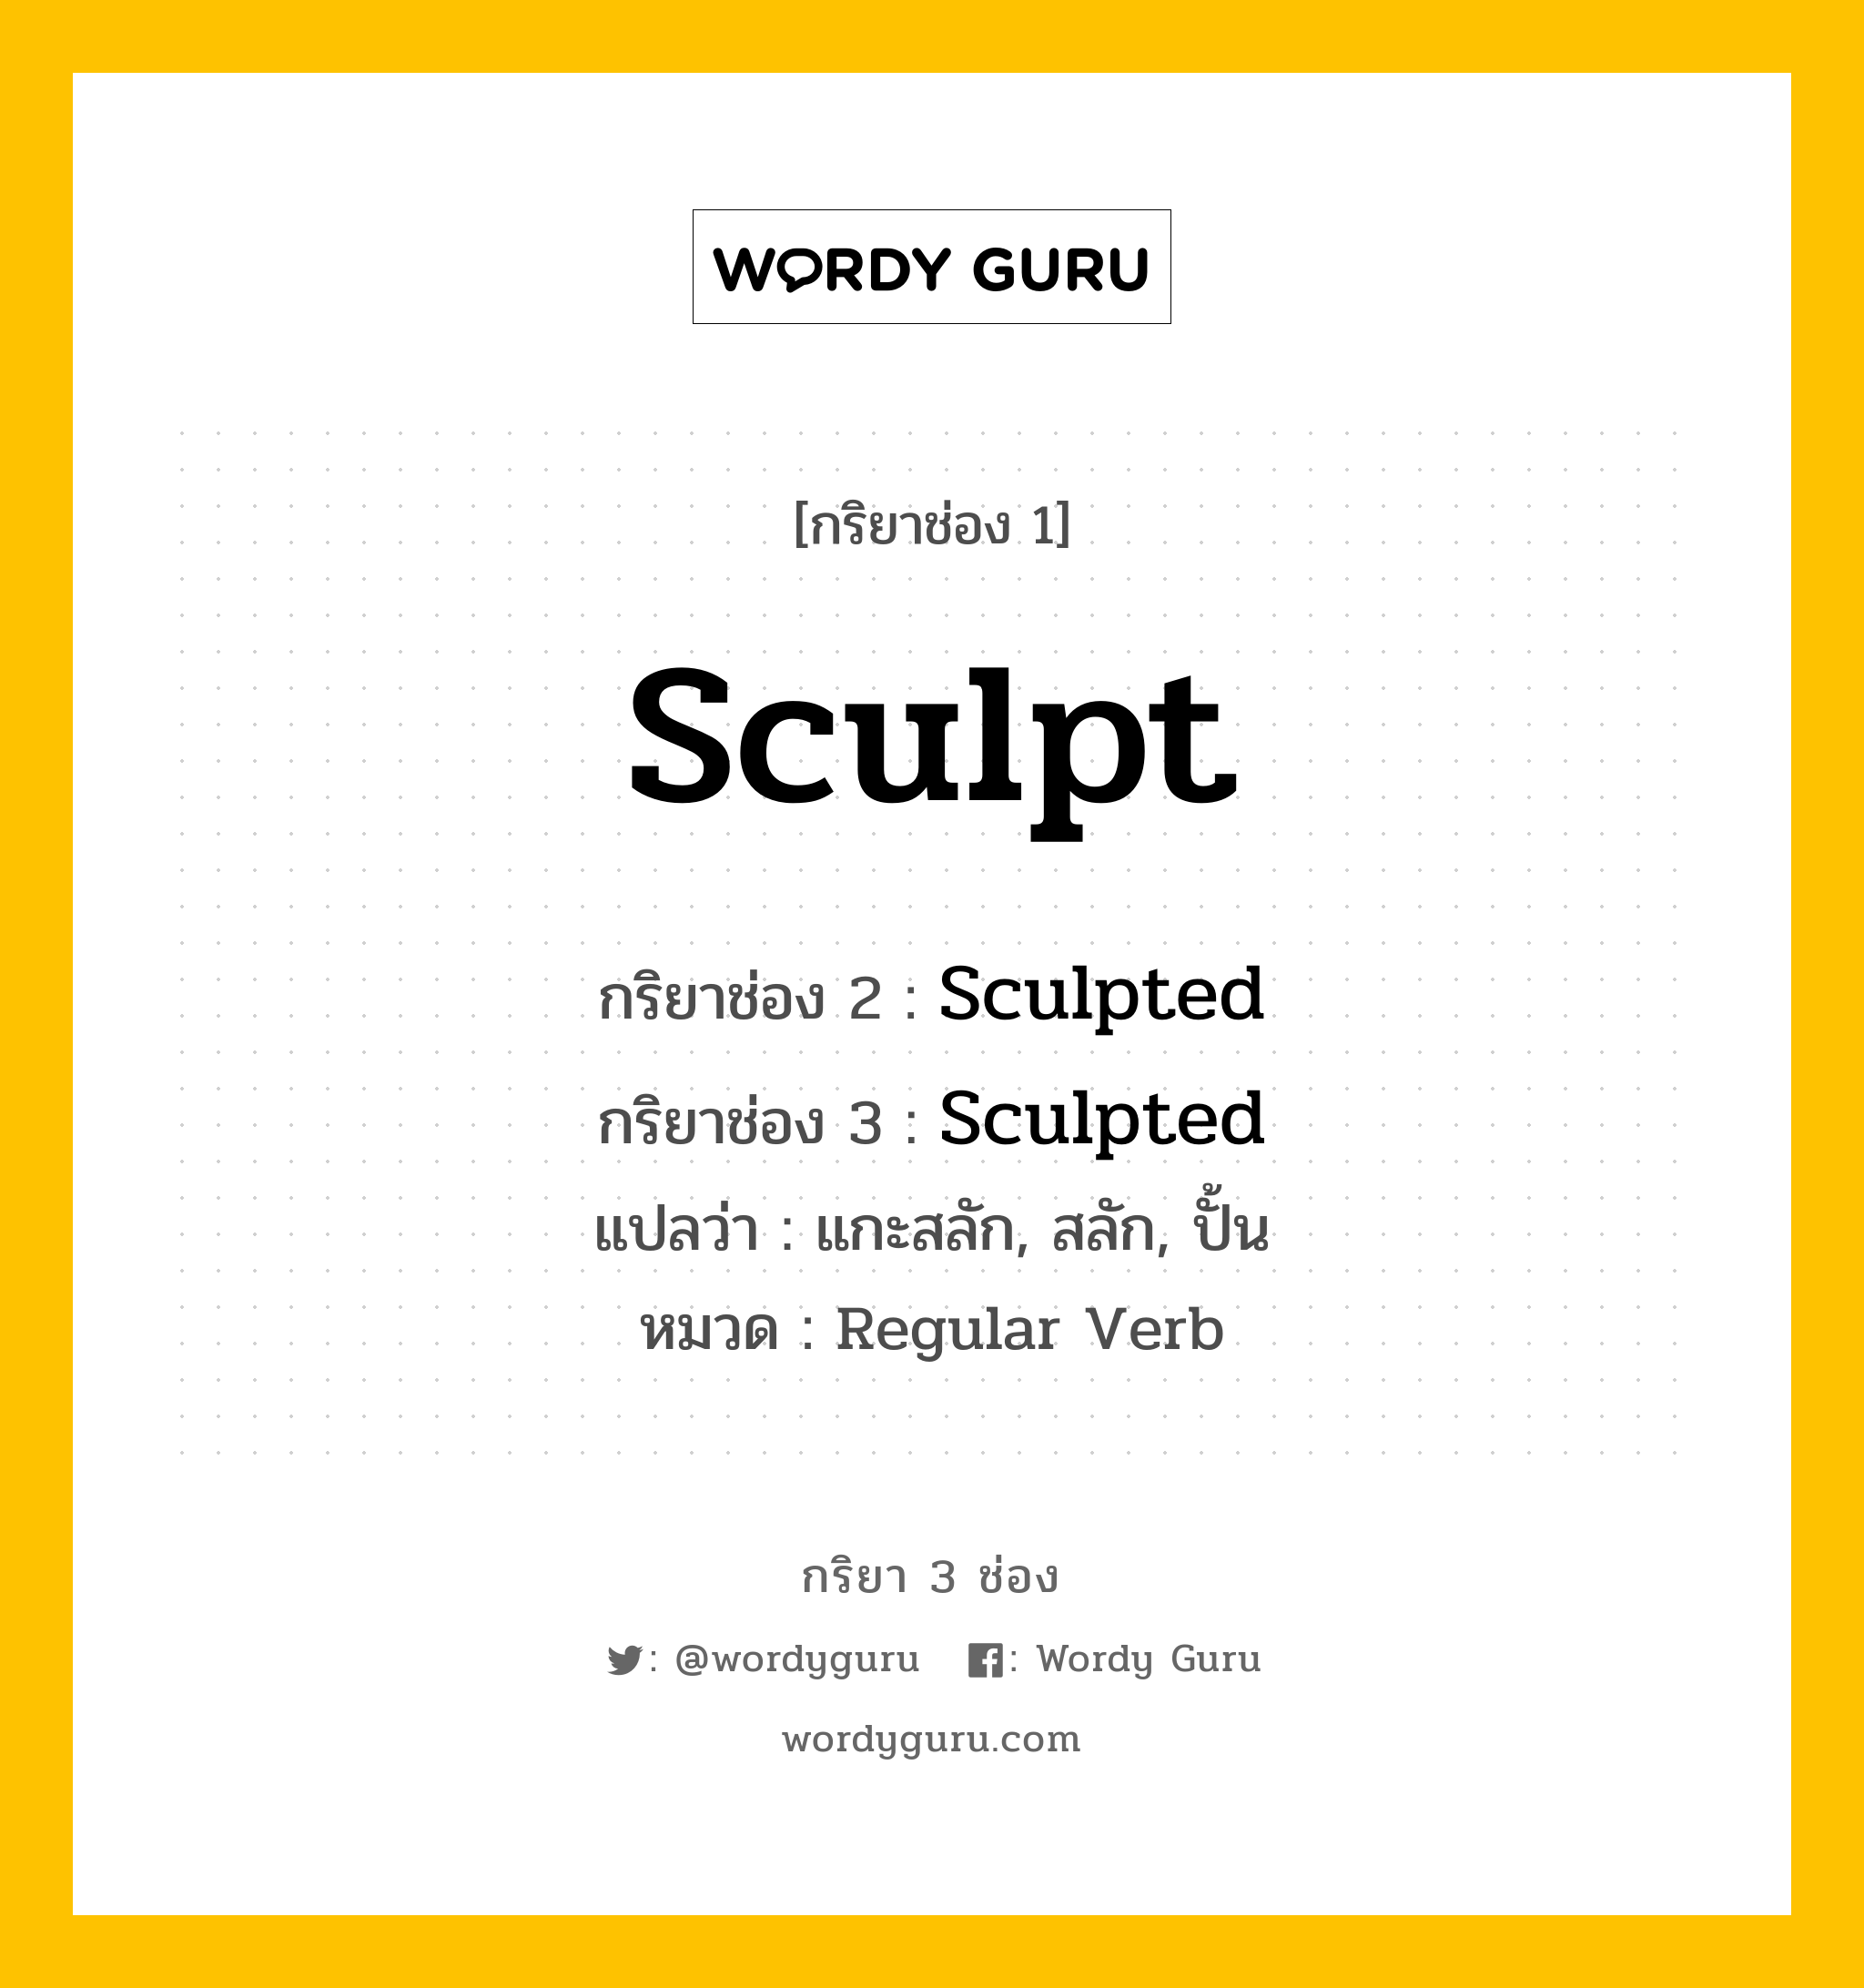 กริยา 3 ช่อง ของ Sculpt คืออะไร? มาดูคำอ่าน คำแปลกันเลย, กริยาช่อง 1 Sculpt กริยาช่อง 2 Sculpted กริยาช่อง 3 Sculpted แปลว่า แกะสลัก, สลัก, ปั้น หมวด Regular Verb หมวด Regular Verb